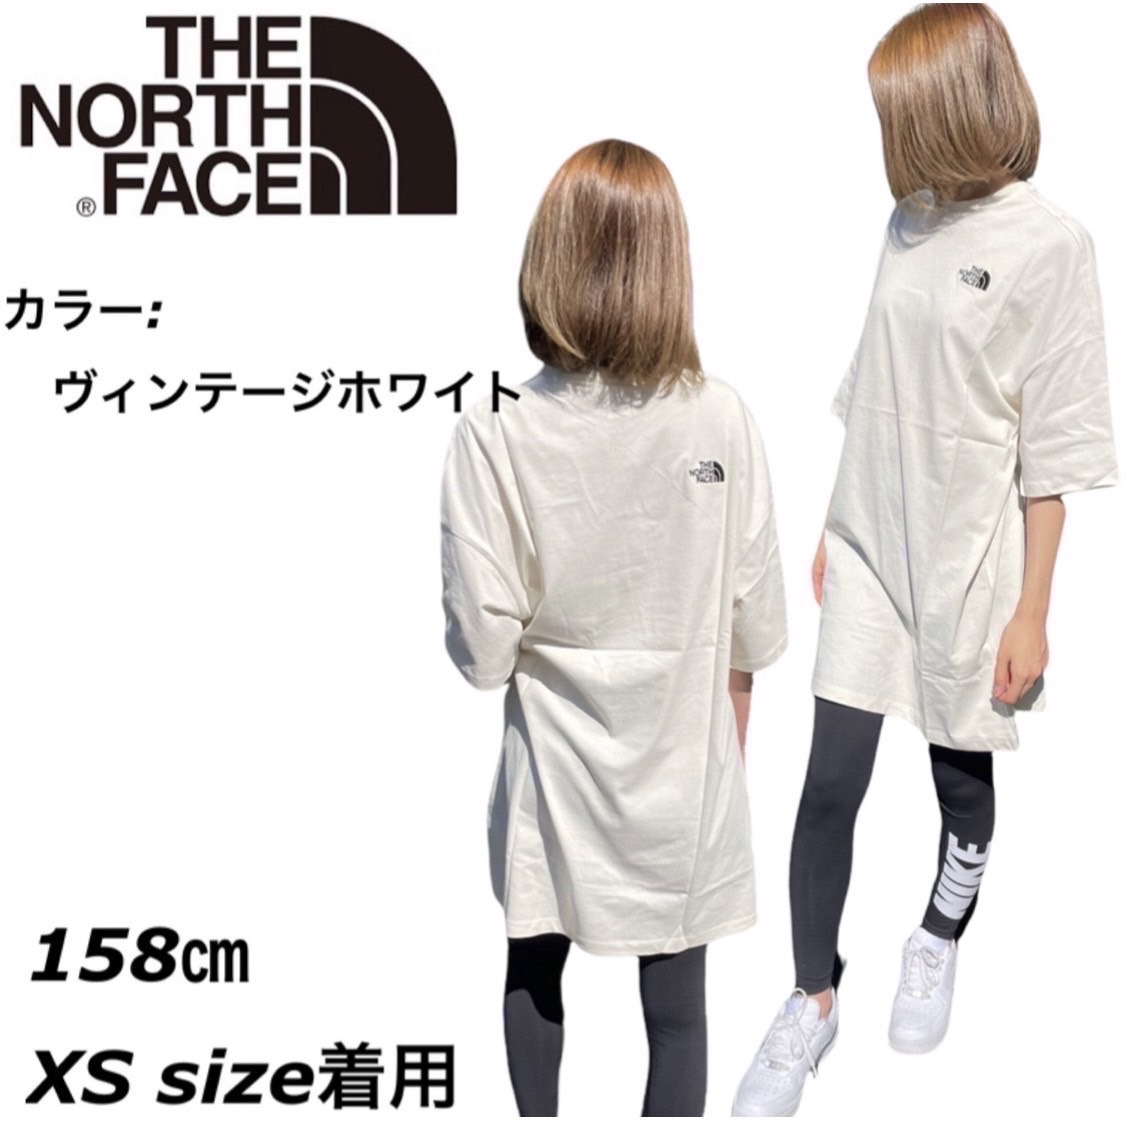 ザ ノースフェイス The North Face Tシャツ ドレス NF0A55AP ワンピース レディース デカT THE NORTH FACE  WOMEN'S S/S T DRESS :DRESSTSHIRT-W:STY1 通販 